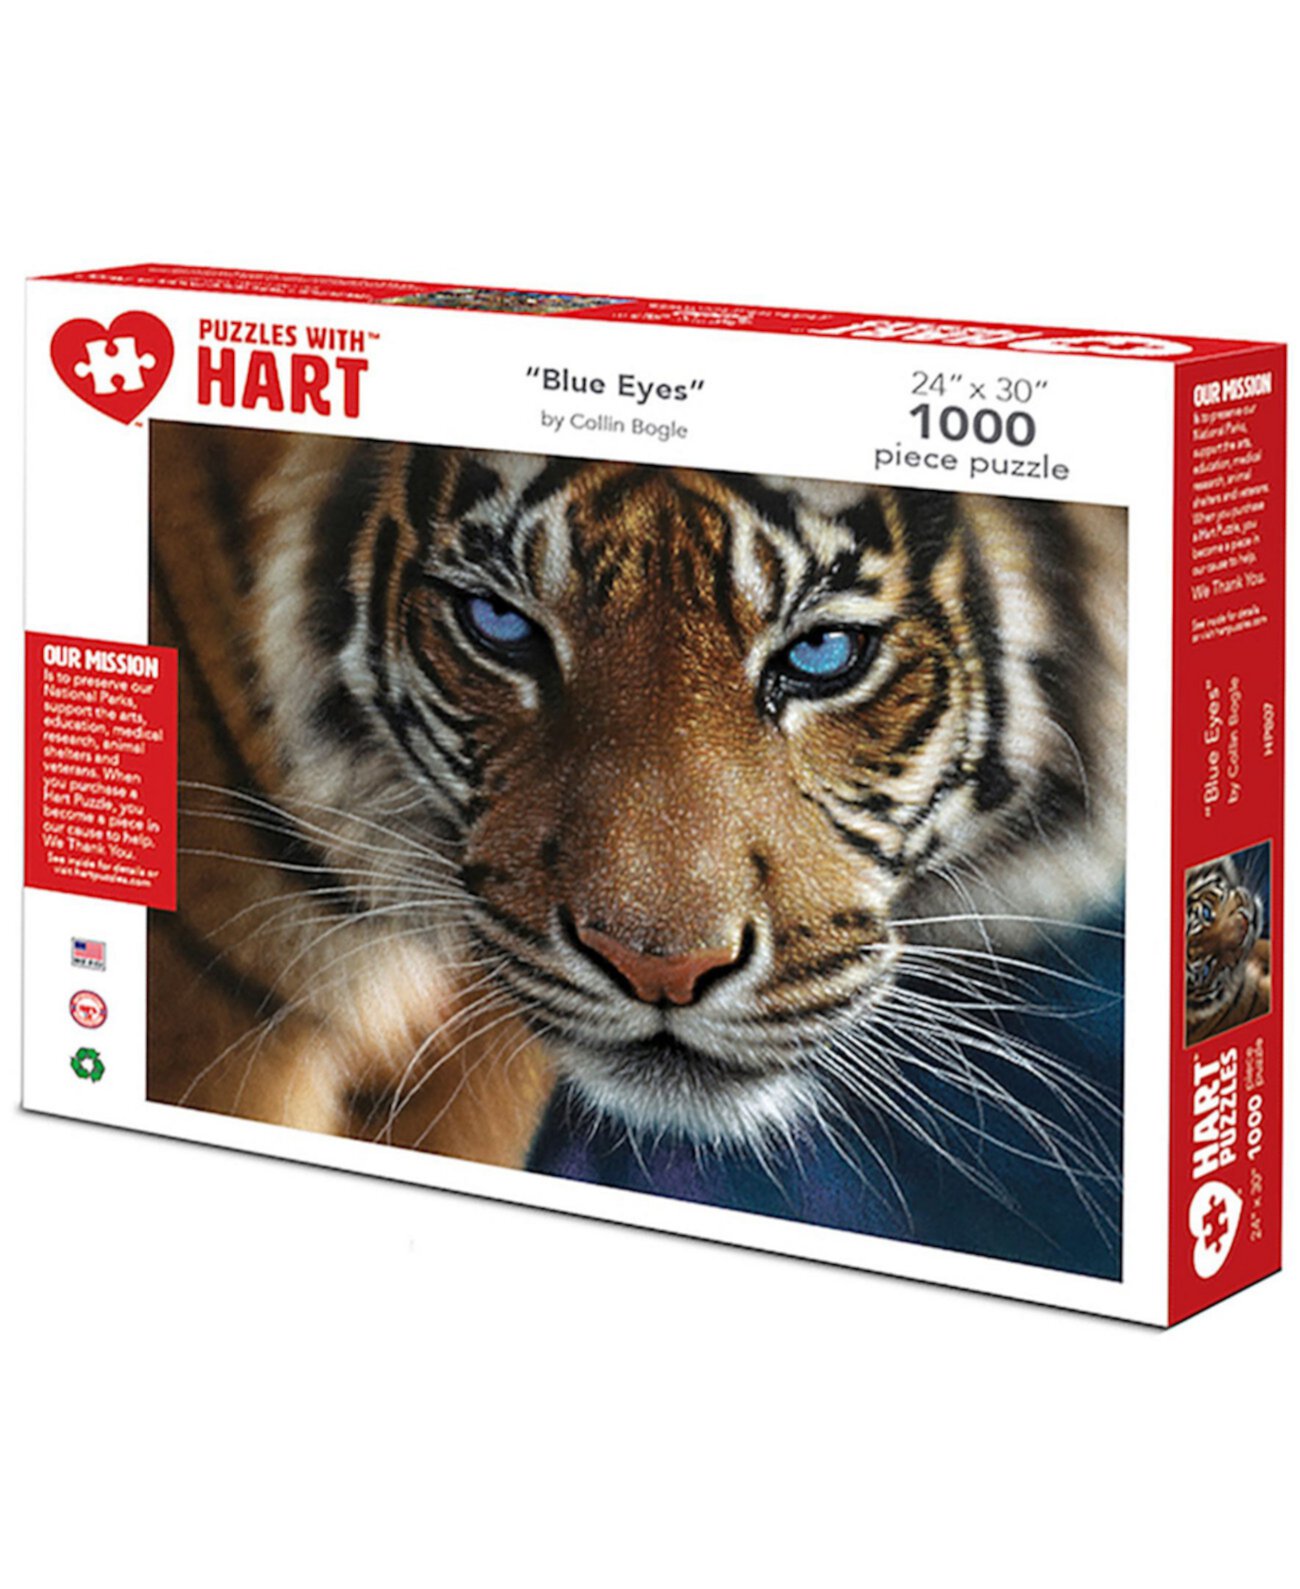 Набор Colin Bogle Blue Eyes Tiger 24 x 30 дюймов, 1000 штук Hart Puzzles